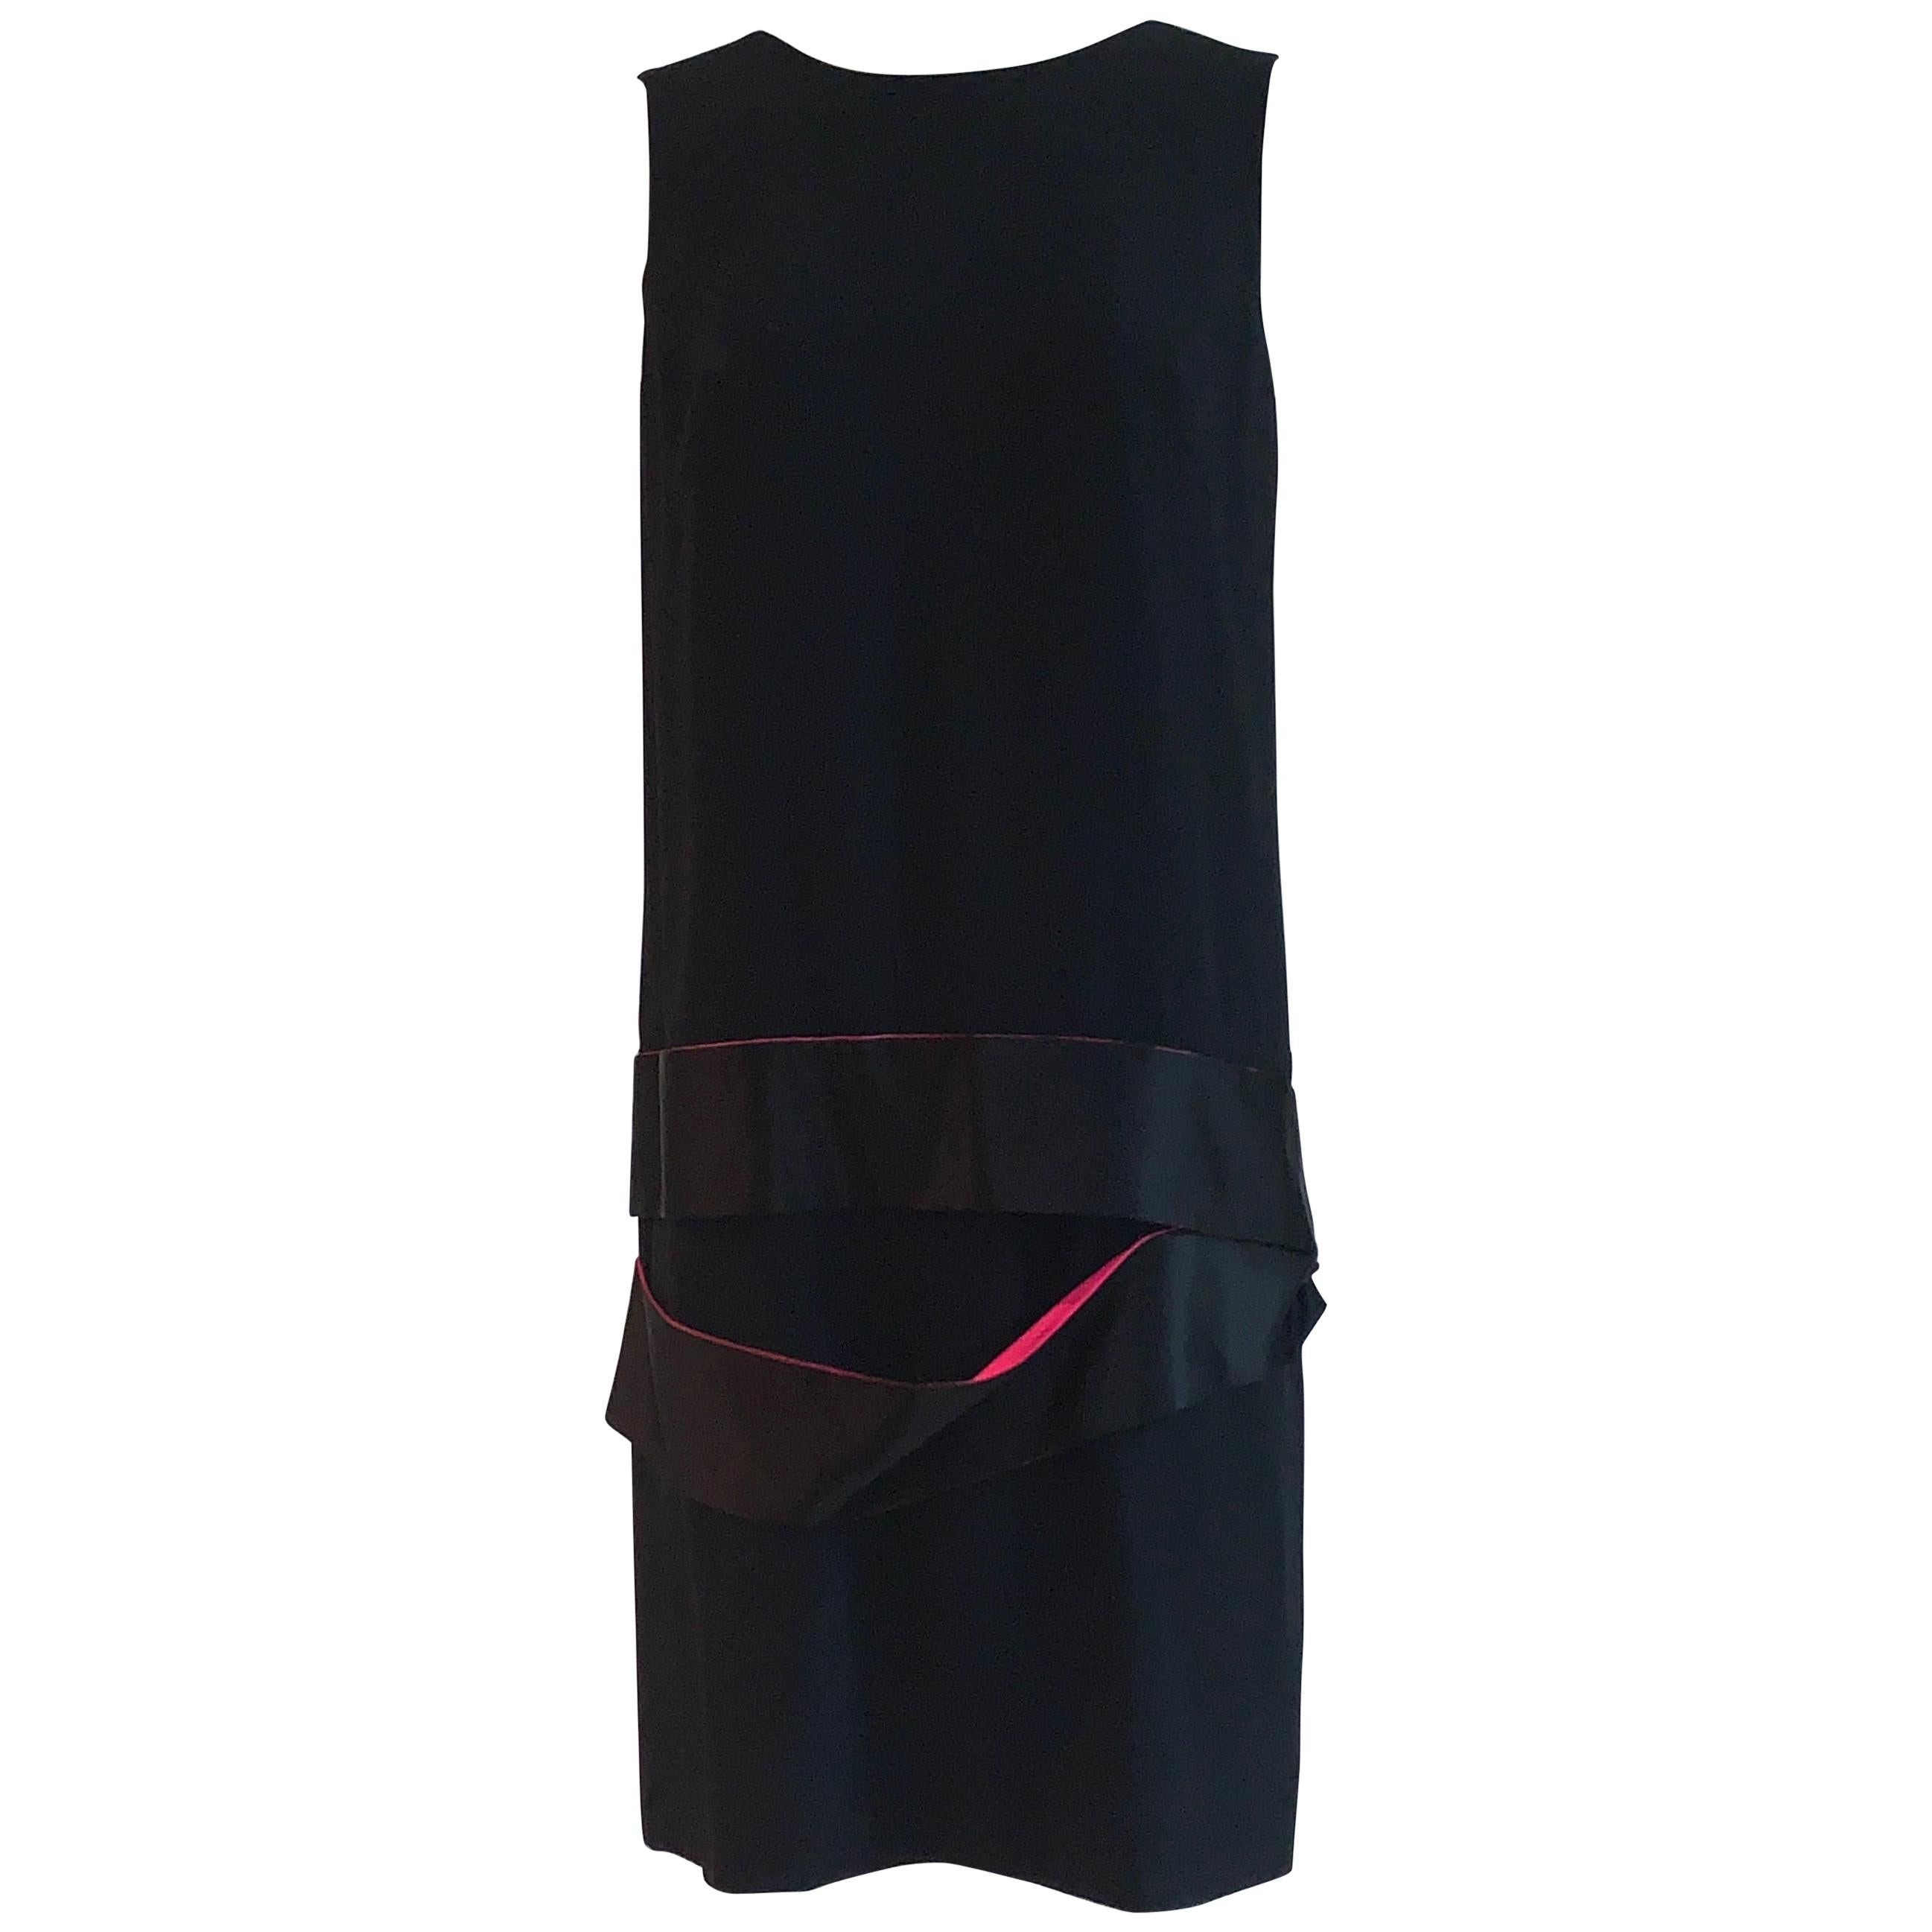 Alexander McQueen 2008 Schwarzes Kleid mit fallender Taille und rosa Seidenband-Detail im Angebot